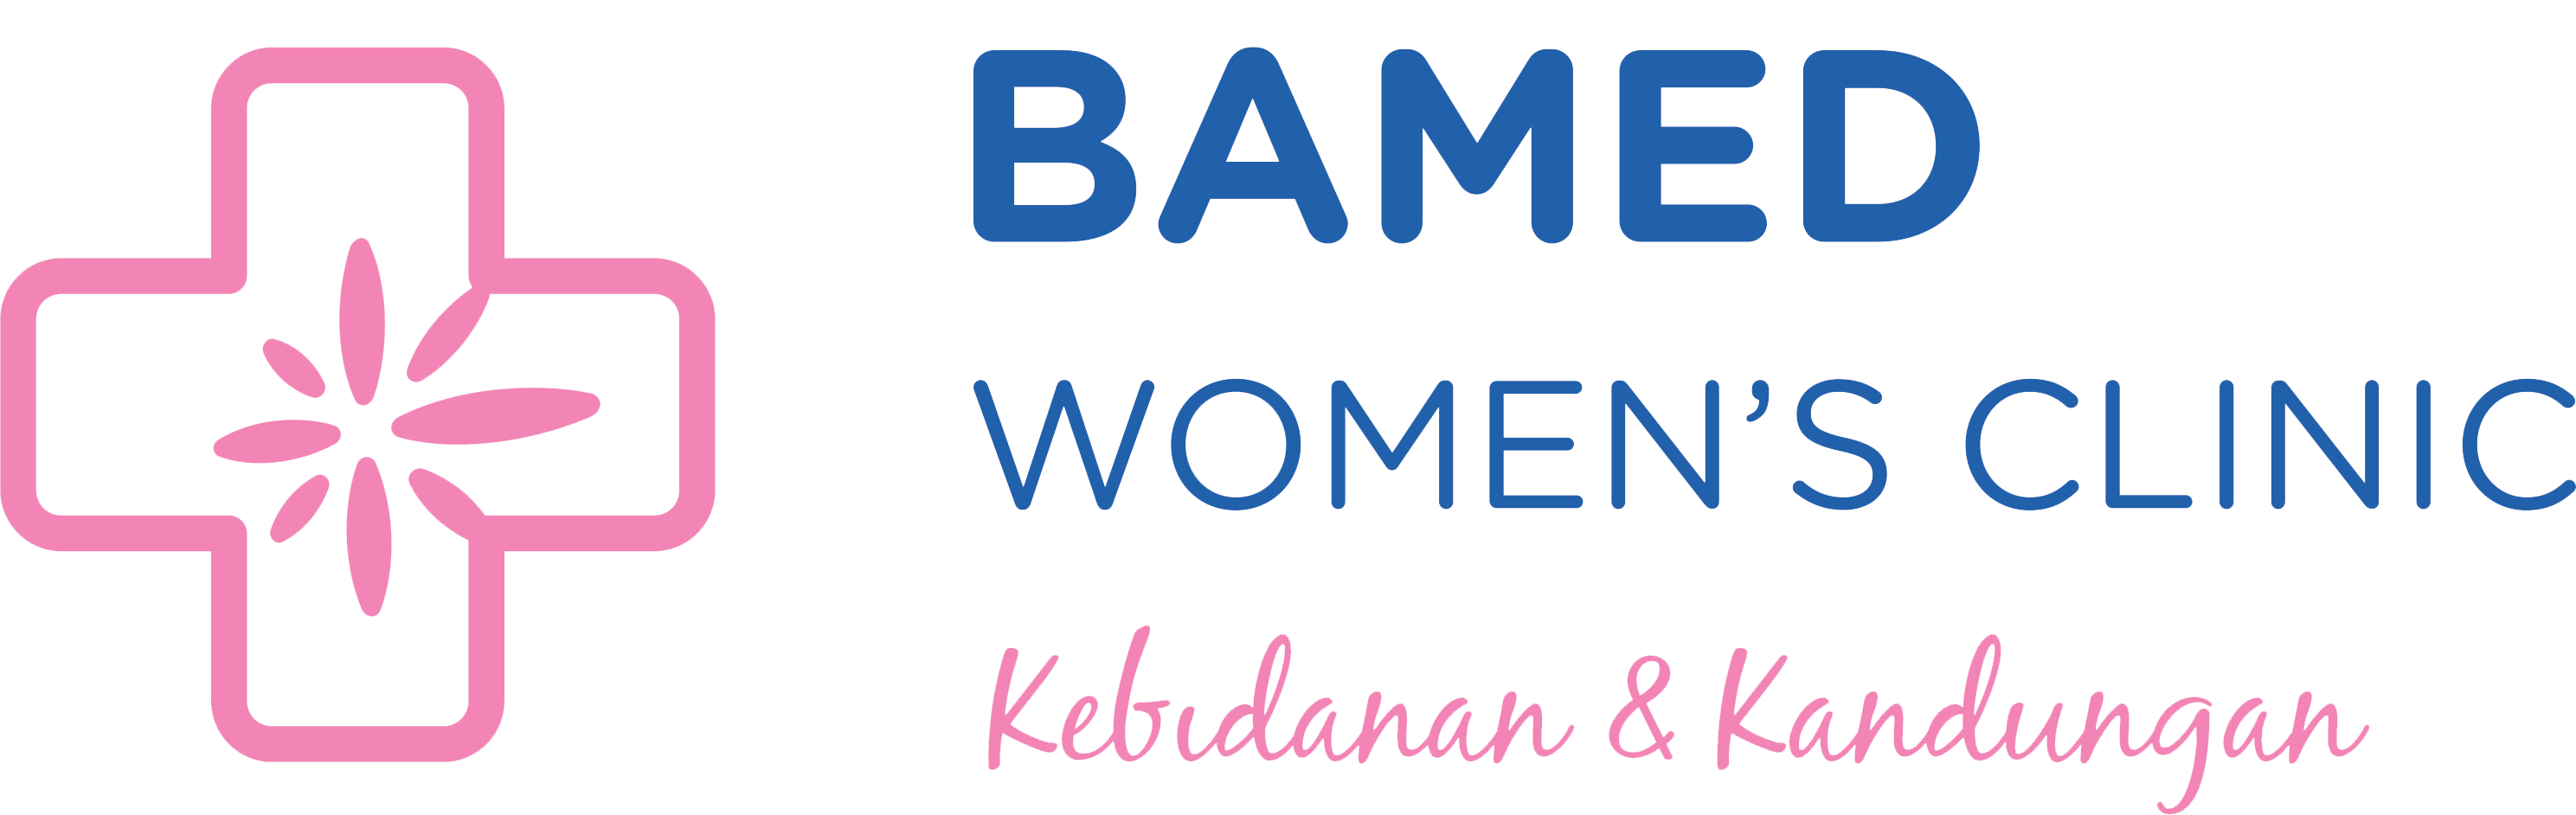 BAMED Women's Clinic